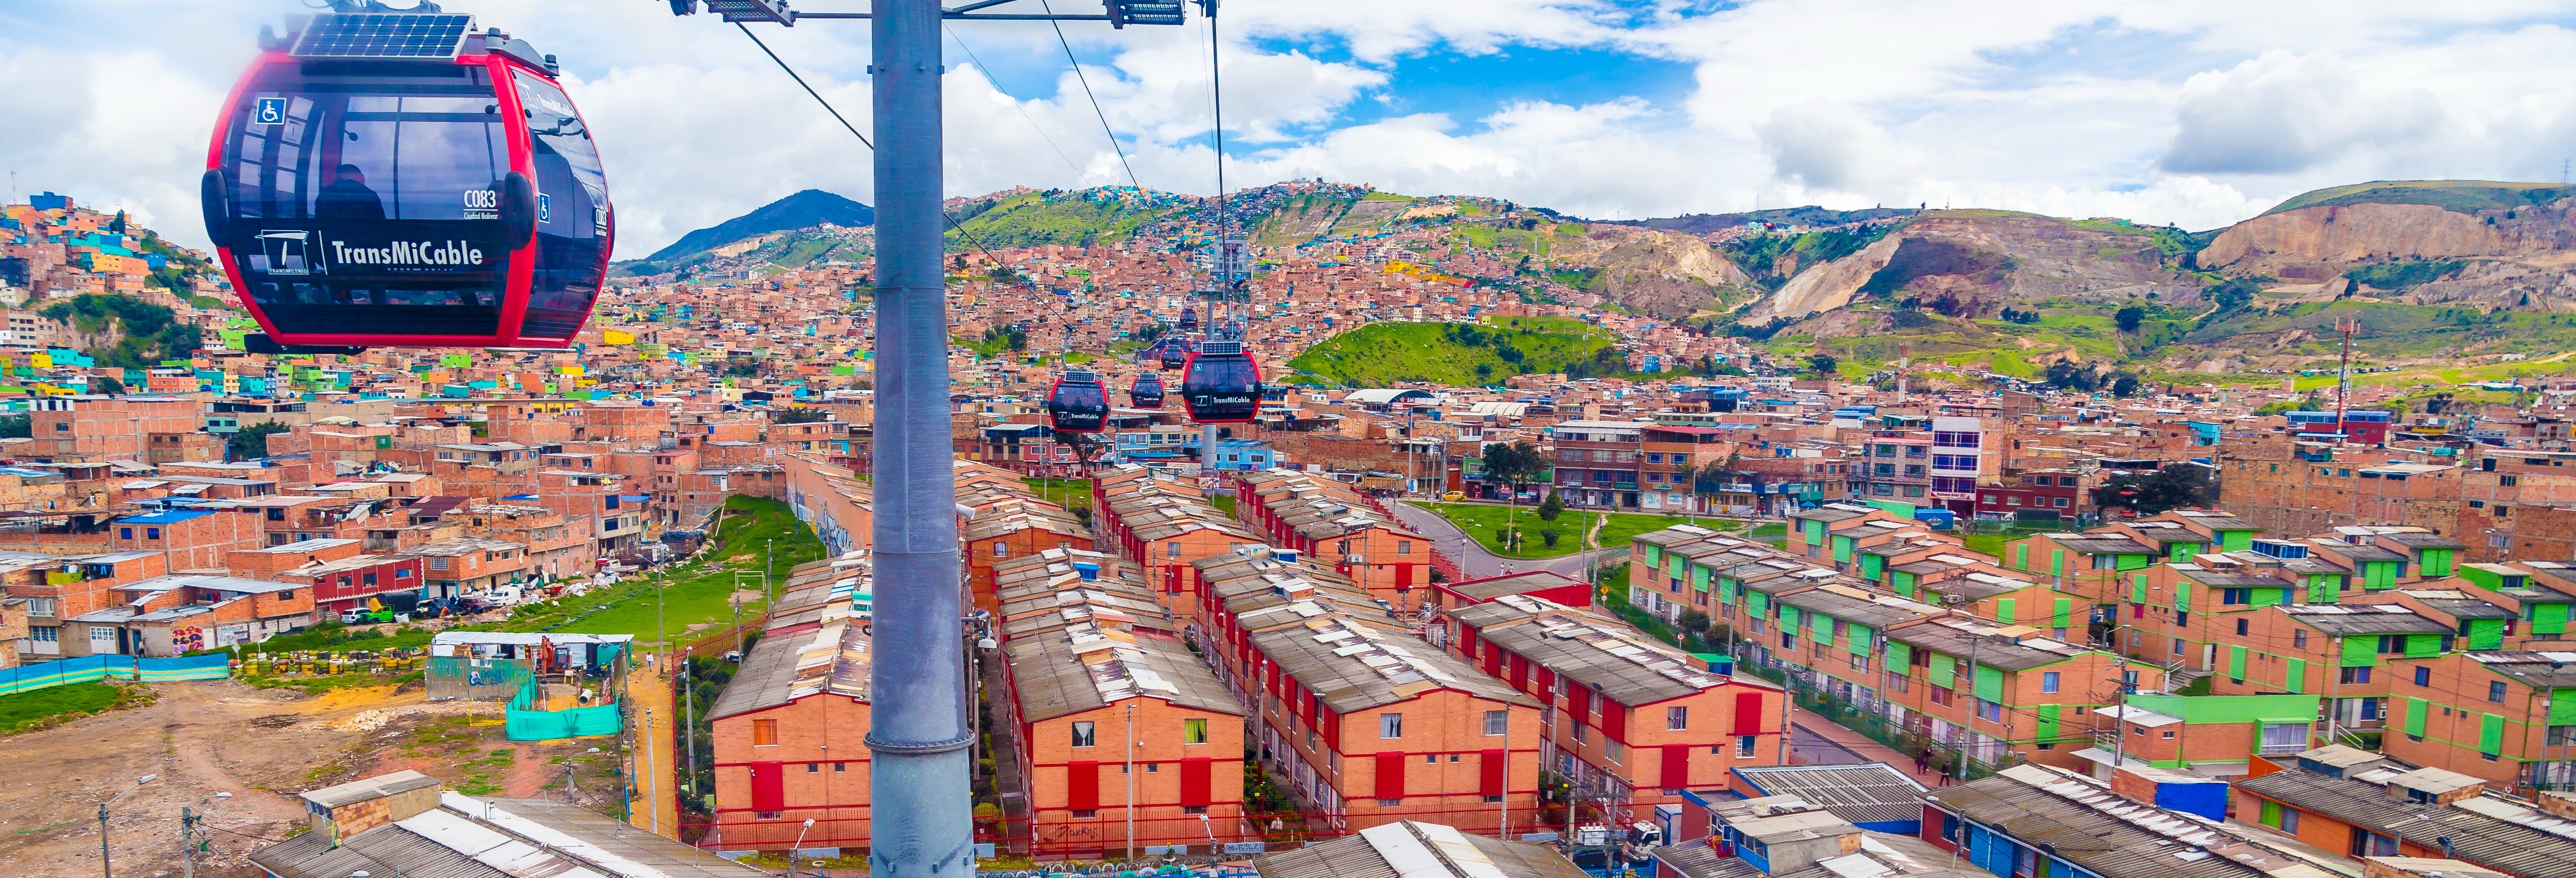 Visita guiada por Paraíso + Teleférico desde Bogotá